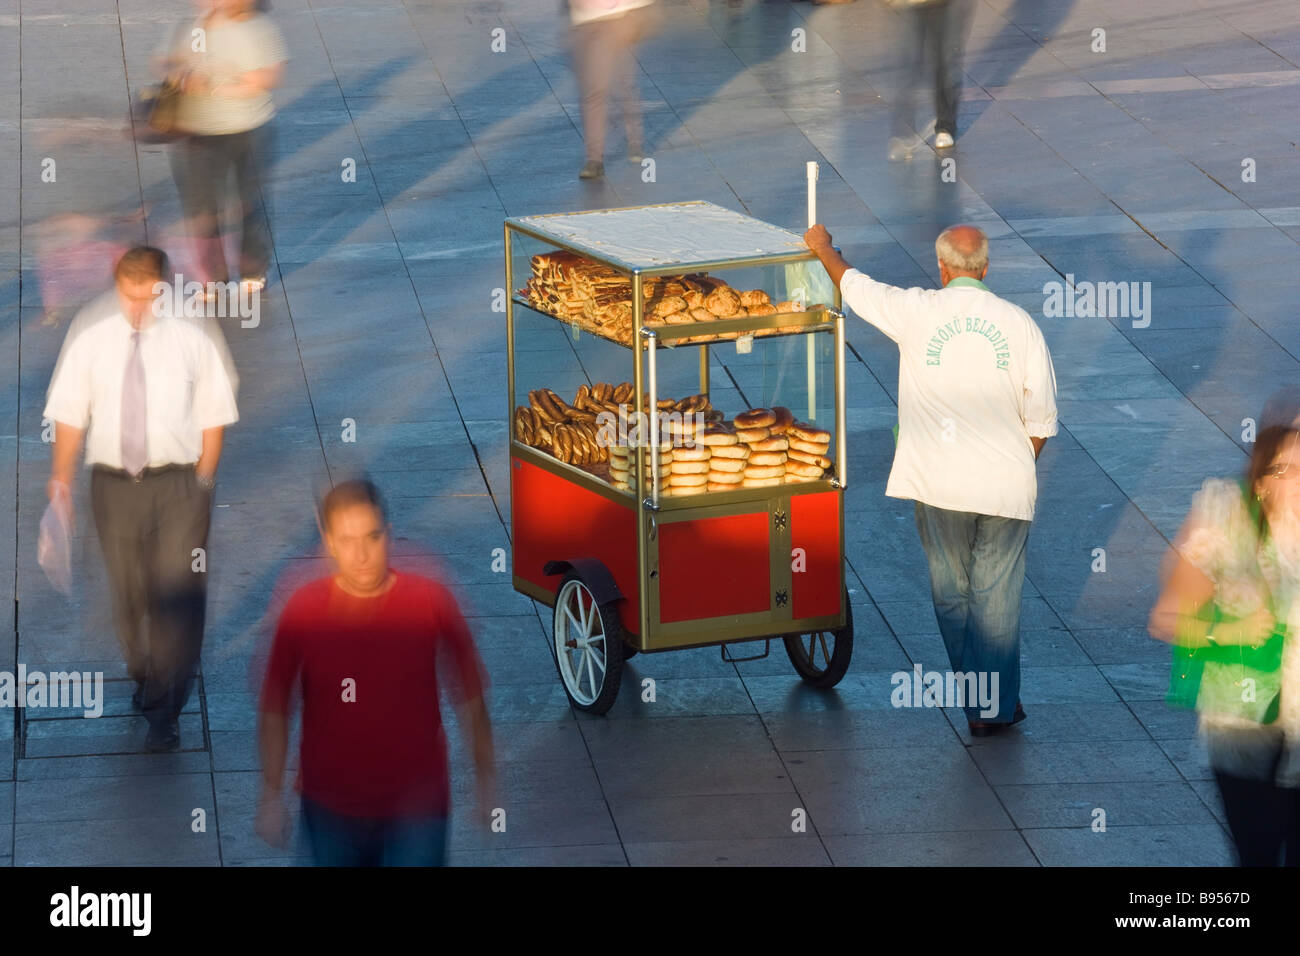 Snack-vendeur de pain pendant les heures de pointe Istanbul Turquie Banque D'Images